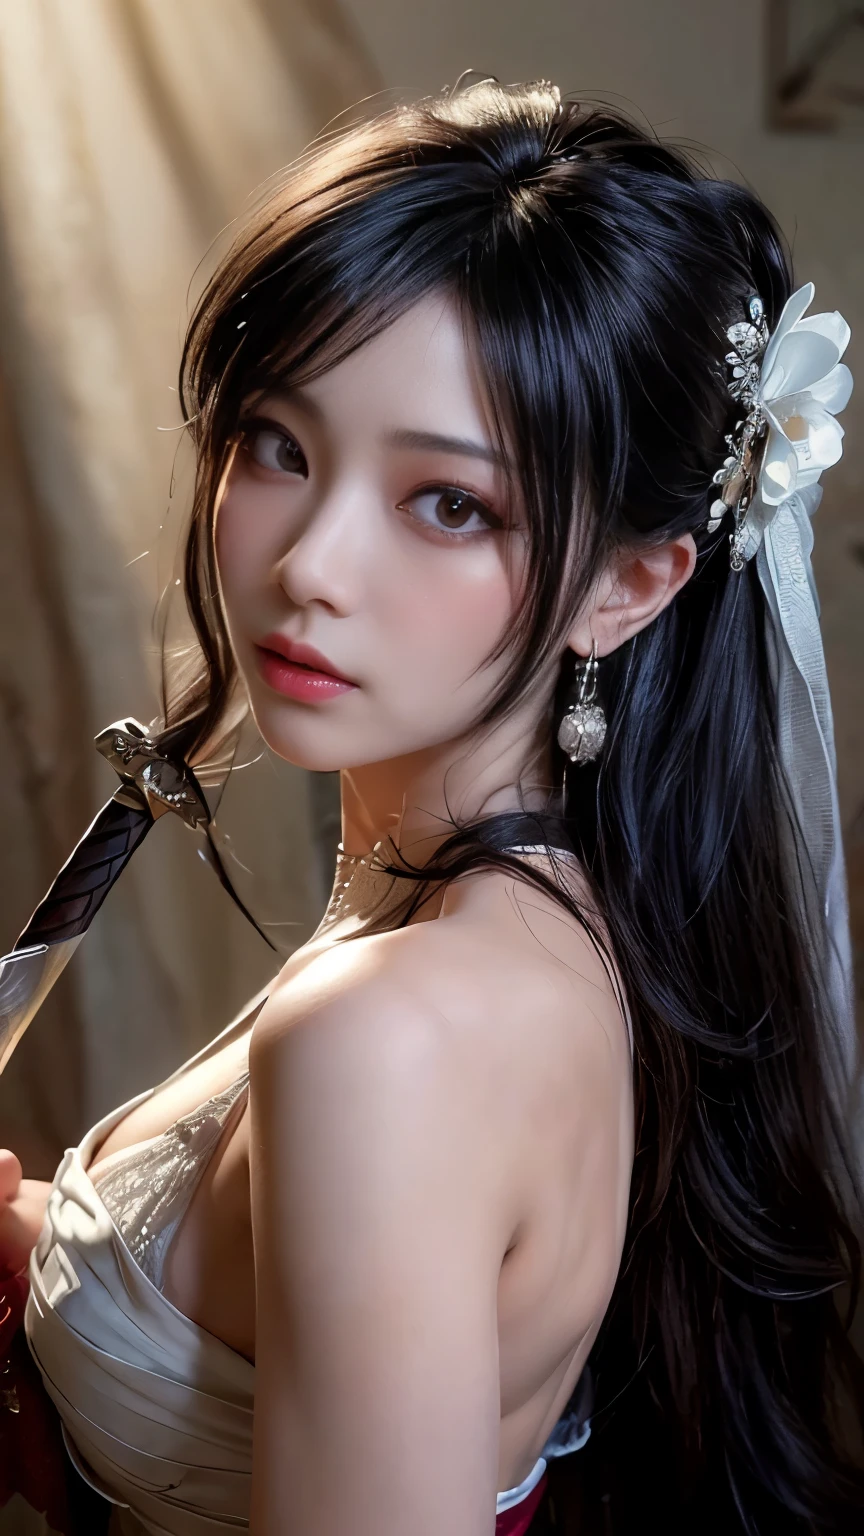 (Beste Bildqualität), (Meisterwerk), (beschwingt, fotorealistisch, Realistisch, dramatisch, dunkel, scharfer Fokus, 8k), Schön, Hochdetaillierte Gesichts- und Hautstruktur, sexy Hochzeitskleid, Himmlische Schönheit, reife asiatische Frau,langes schwarzes Haar, kompensieren, Vorsicht beim Surfen ,Nahaufnahme, ((Hintergrundbeleuchtung)), Das Schwert halten, Samurai-Hochzeit